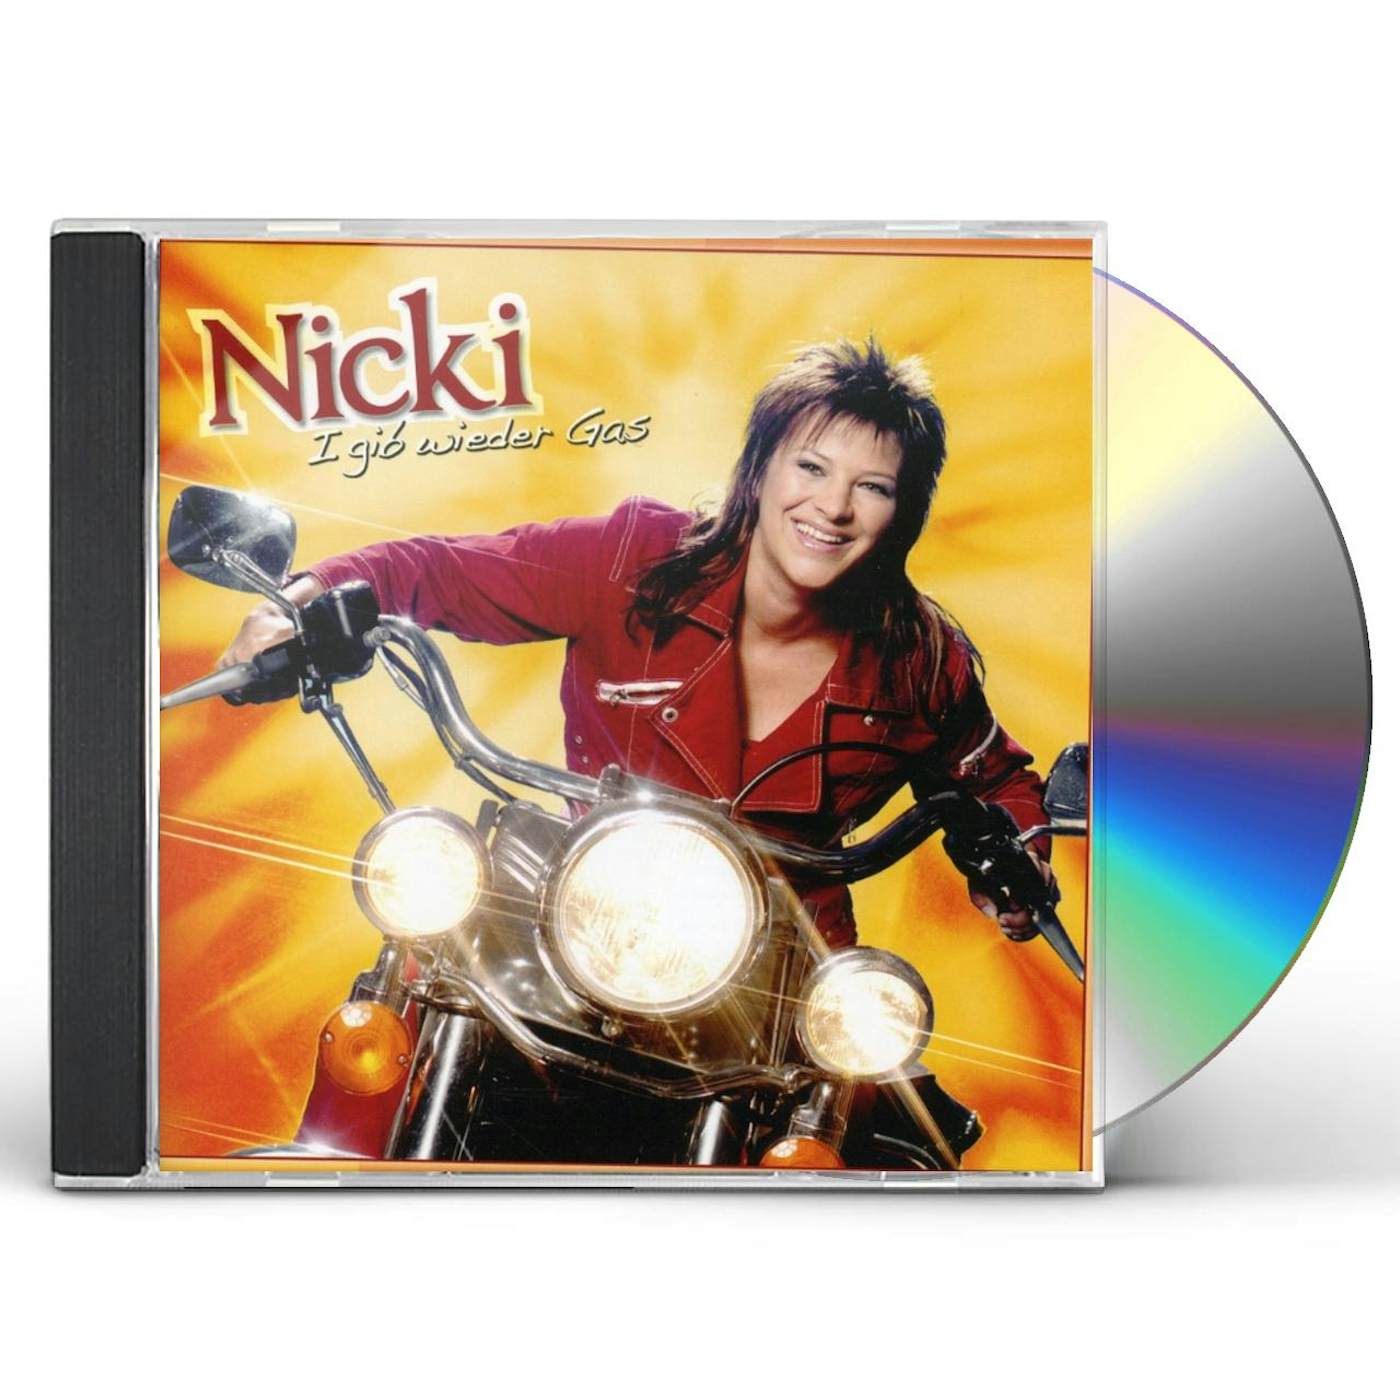 Nicki I GIB WIEDER GAS CD